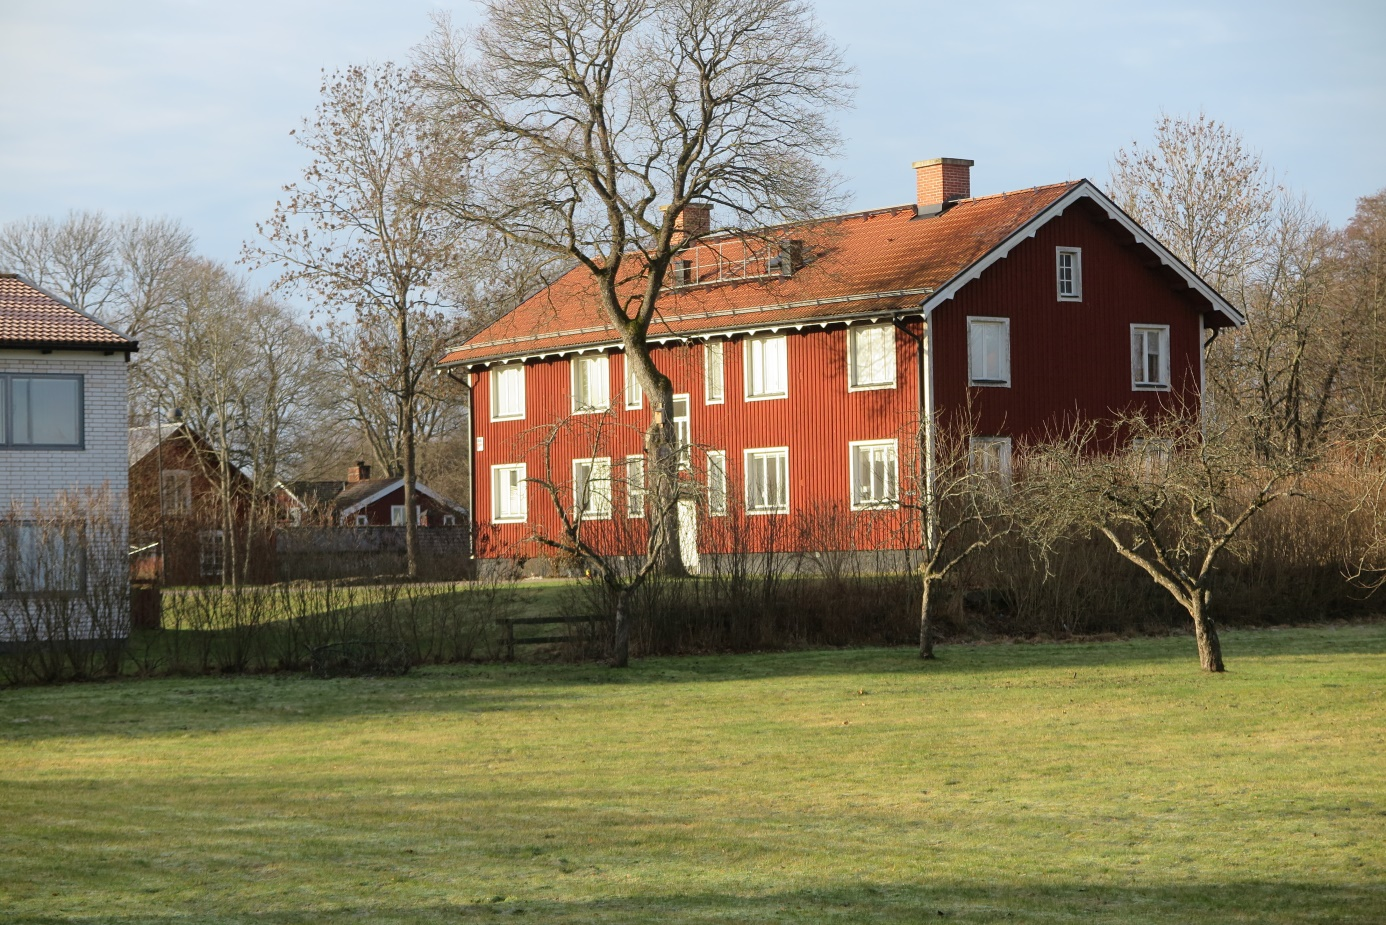 Kristallpalatset i Orrefors 2016. Till vänster skymtar kvarteret Stallgården. I bakgrunden ser vi det vitputsade f.d. sädesmagasinet.